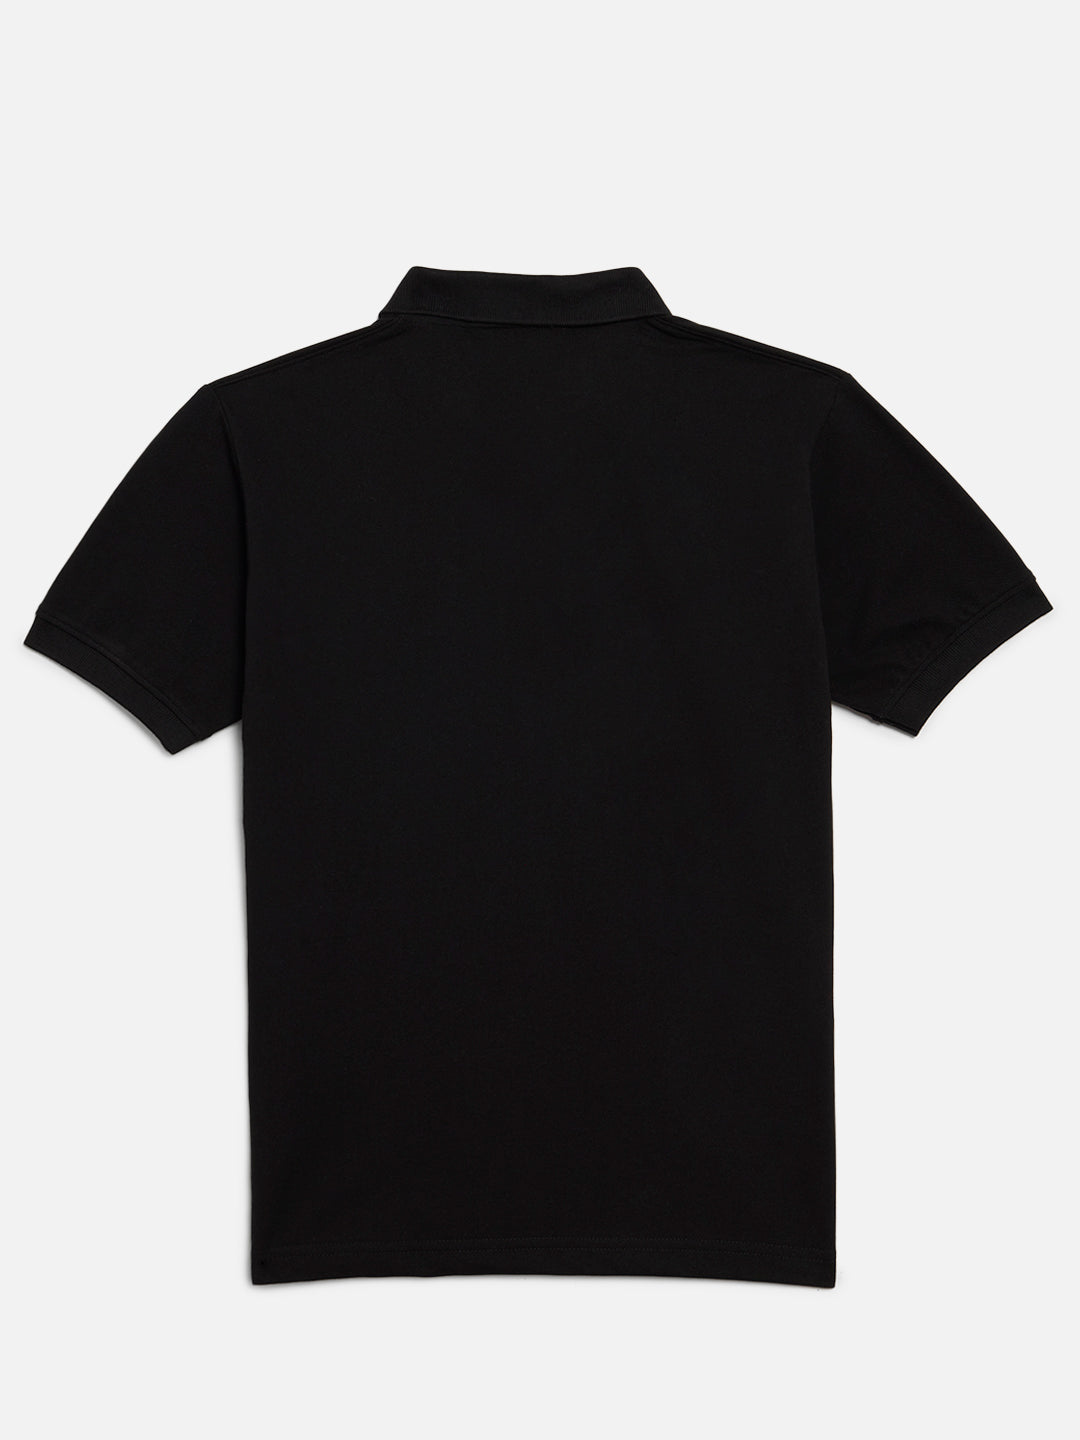 GRIFFEL Boys Kids Black Printed Polo T-shirt